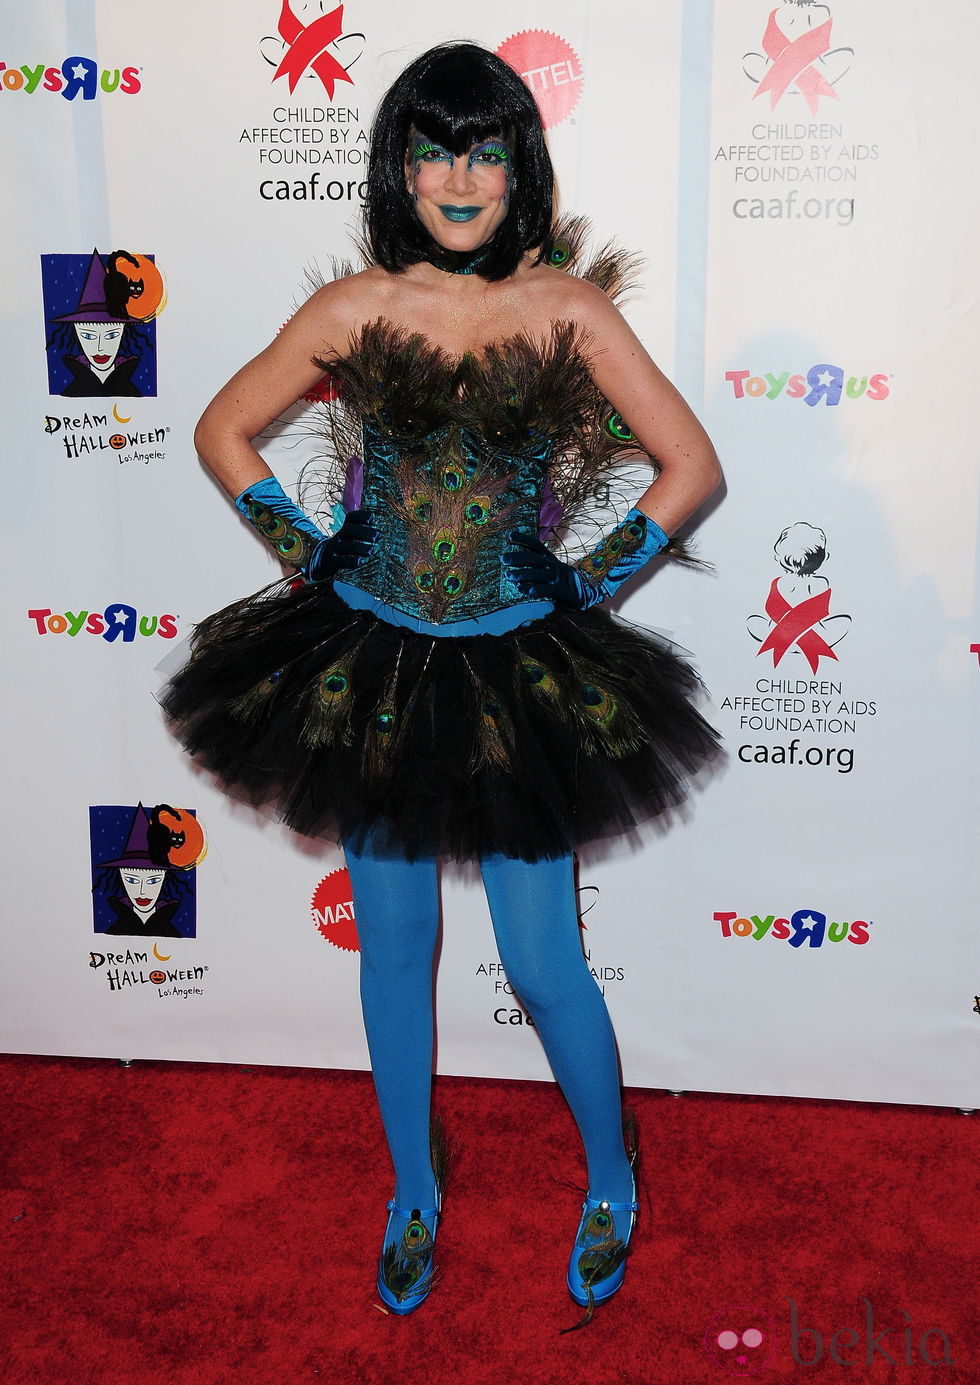 Maquillaje de Tori Spelling para Halloween 2011